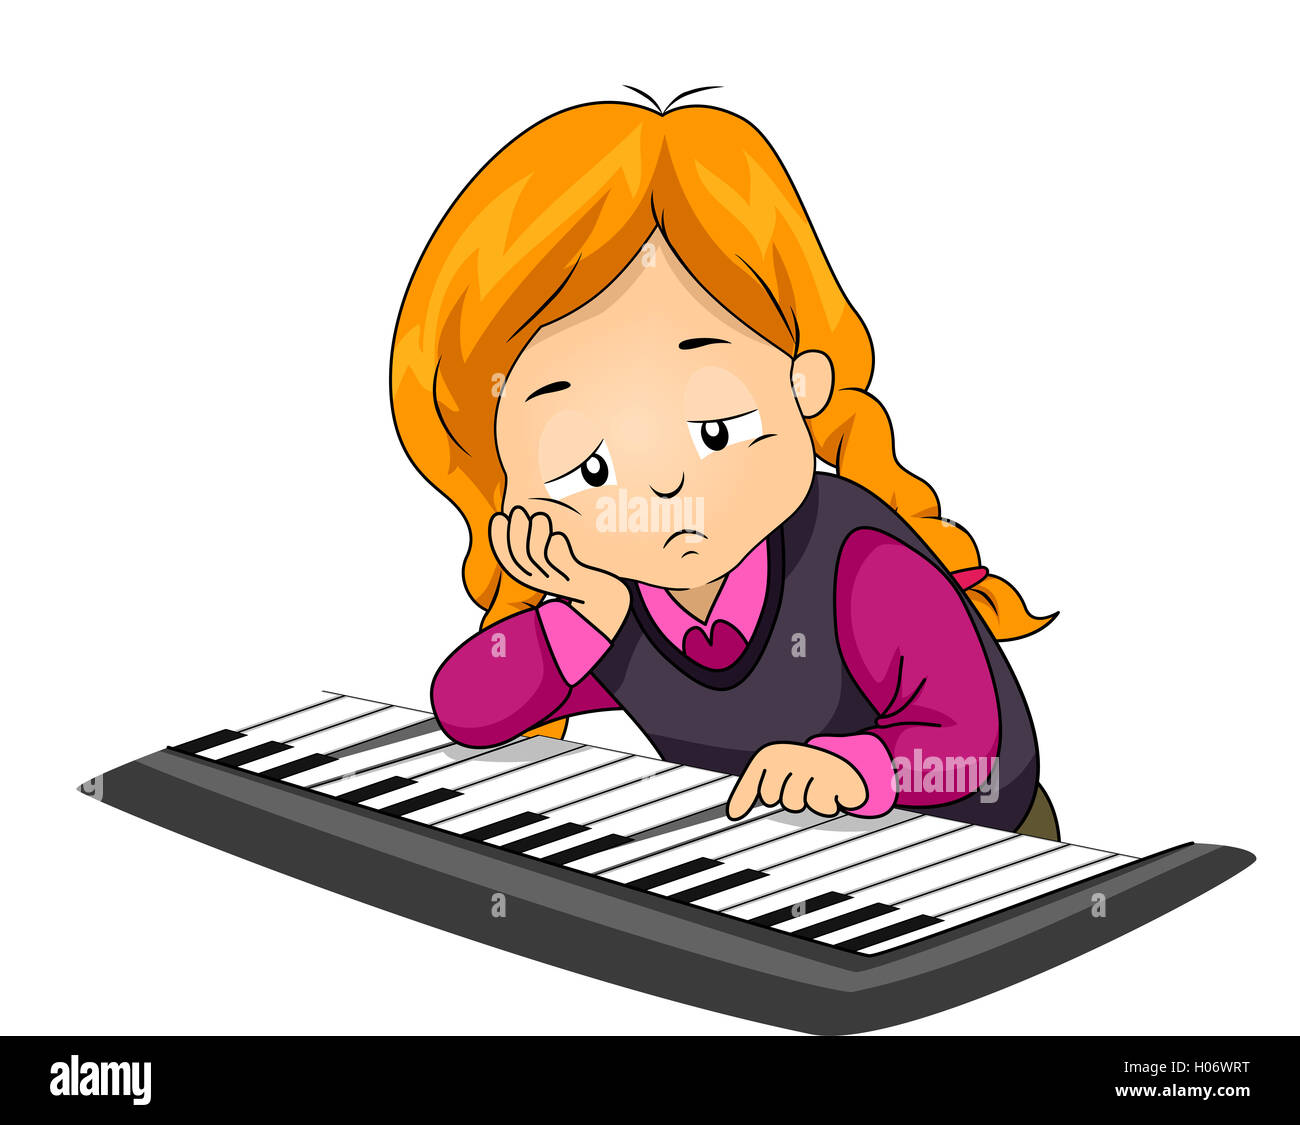 Ilustración de un aburrido niña jugando con el piano Foto de stock